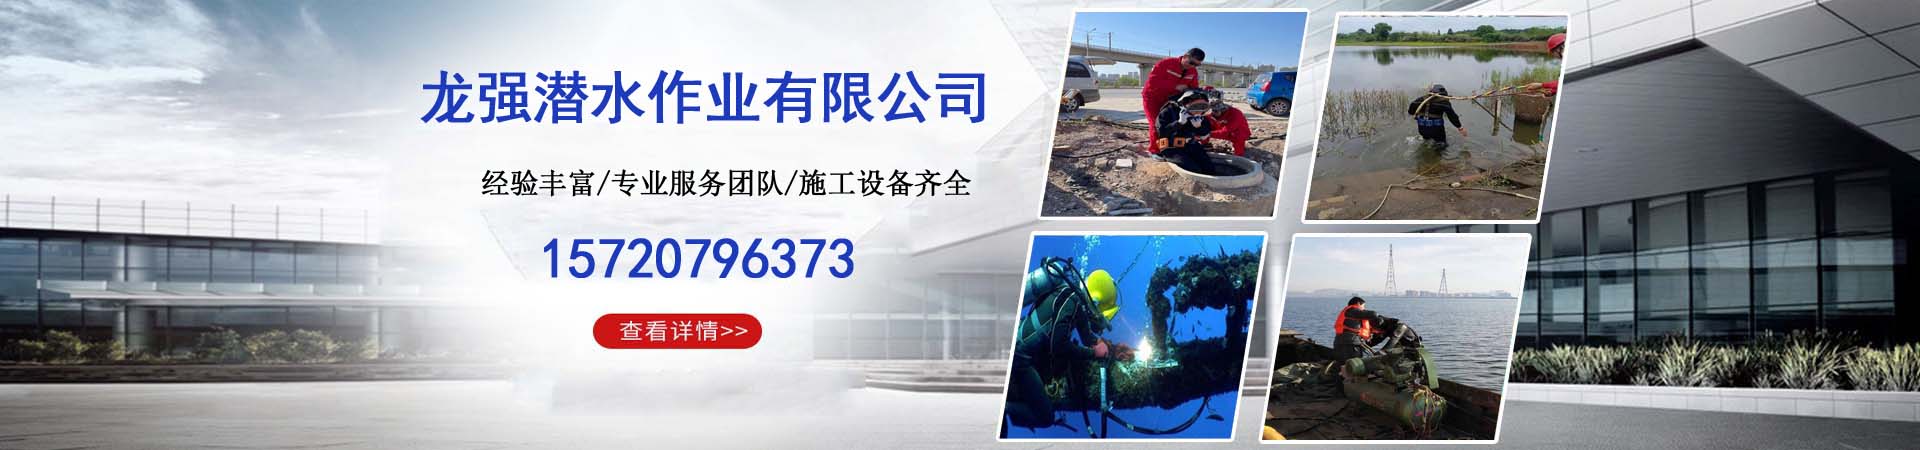 管道水下安装团队、北京本地管道水下安装团队、北京、北京管道水下安装团队